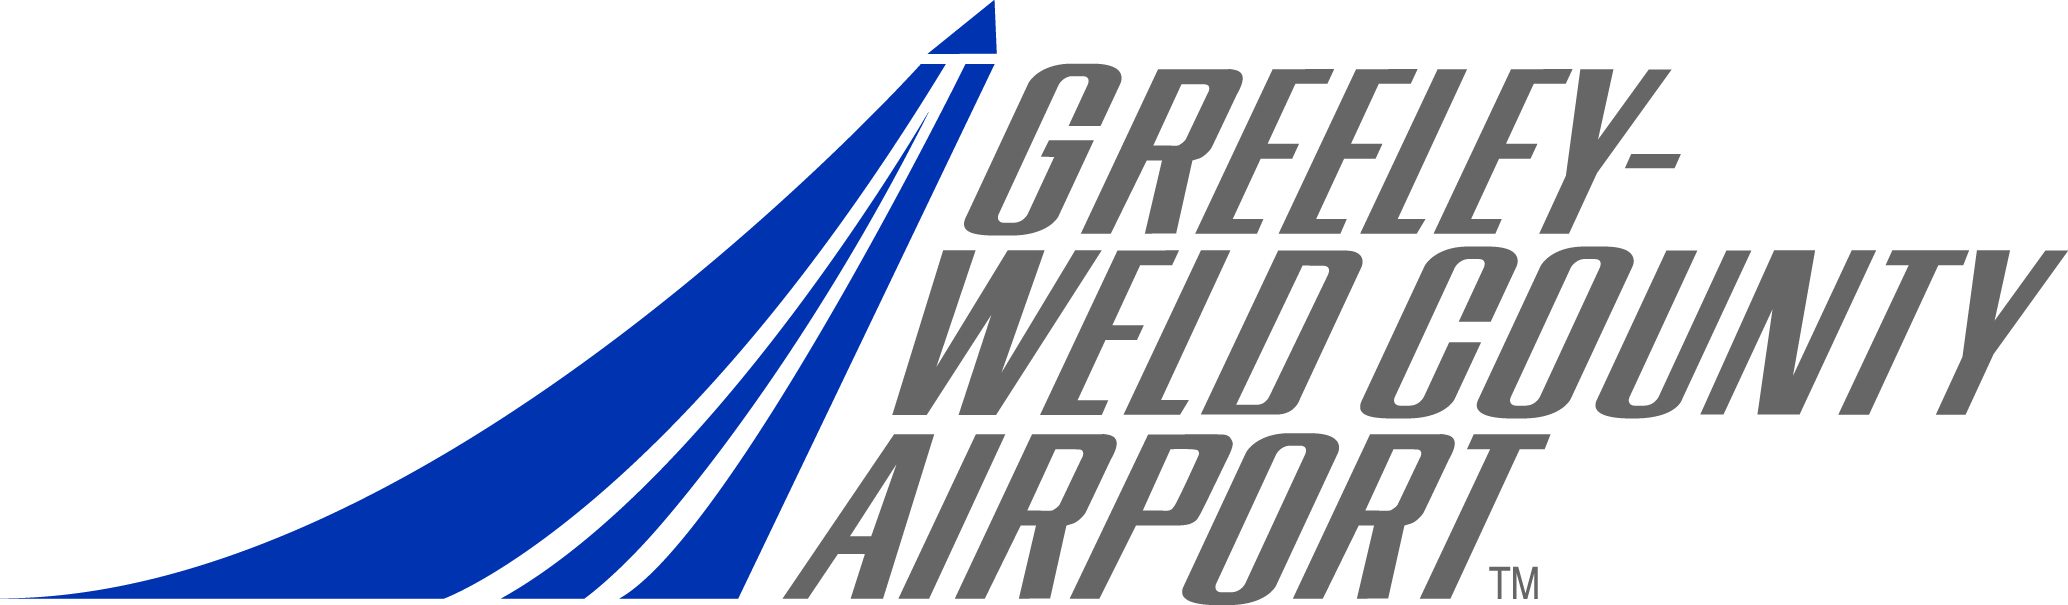 GXY Logo detail image